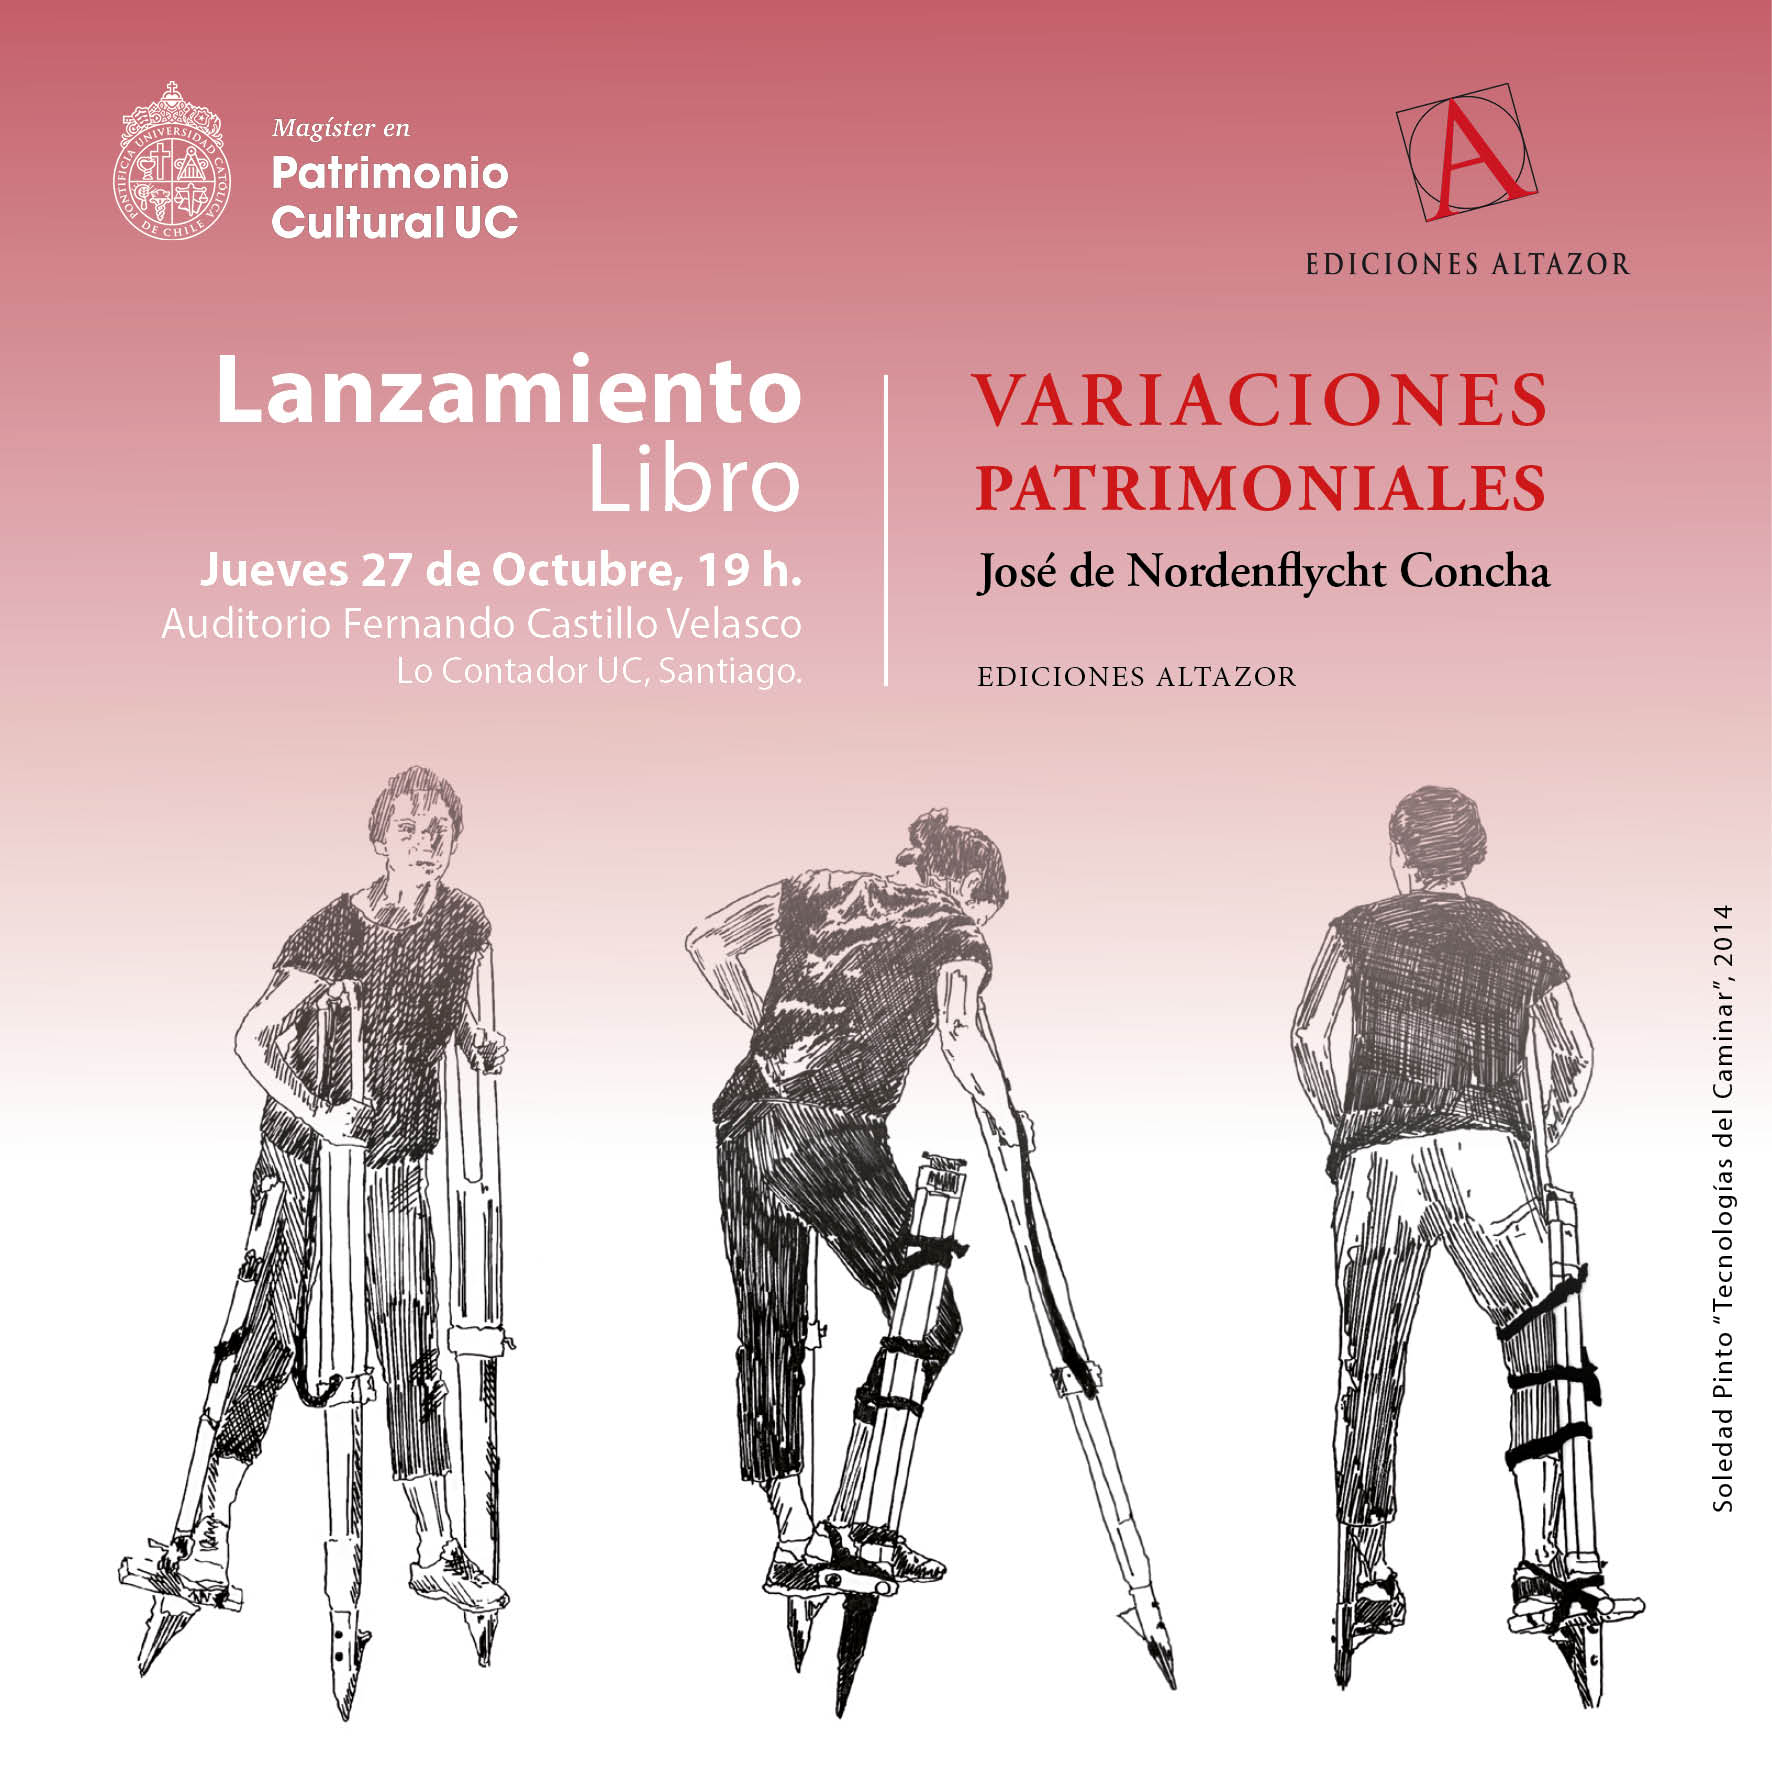 Invitación_Lanzamiento_Libro_Variaciones_Patrimoniales_RRSS_Oct2022.jpg